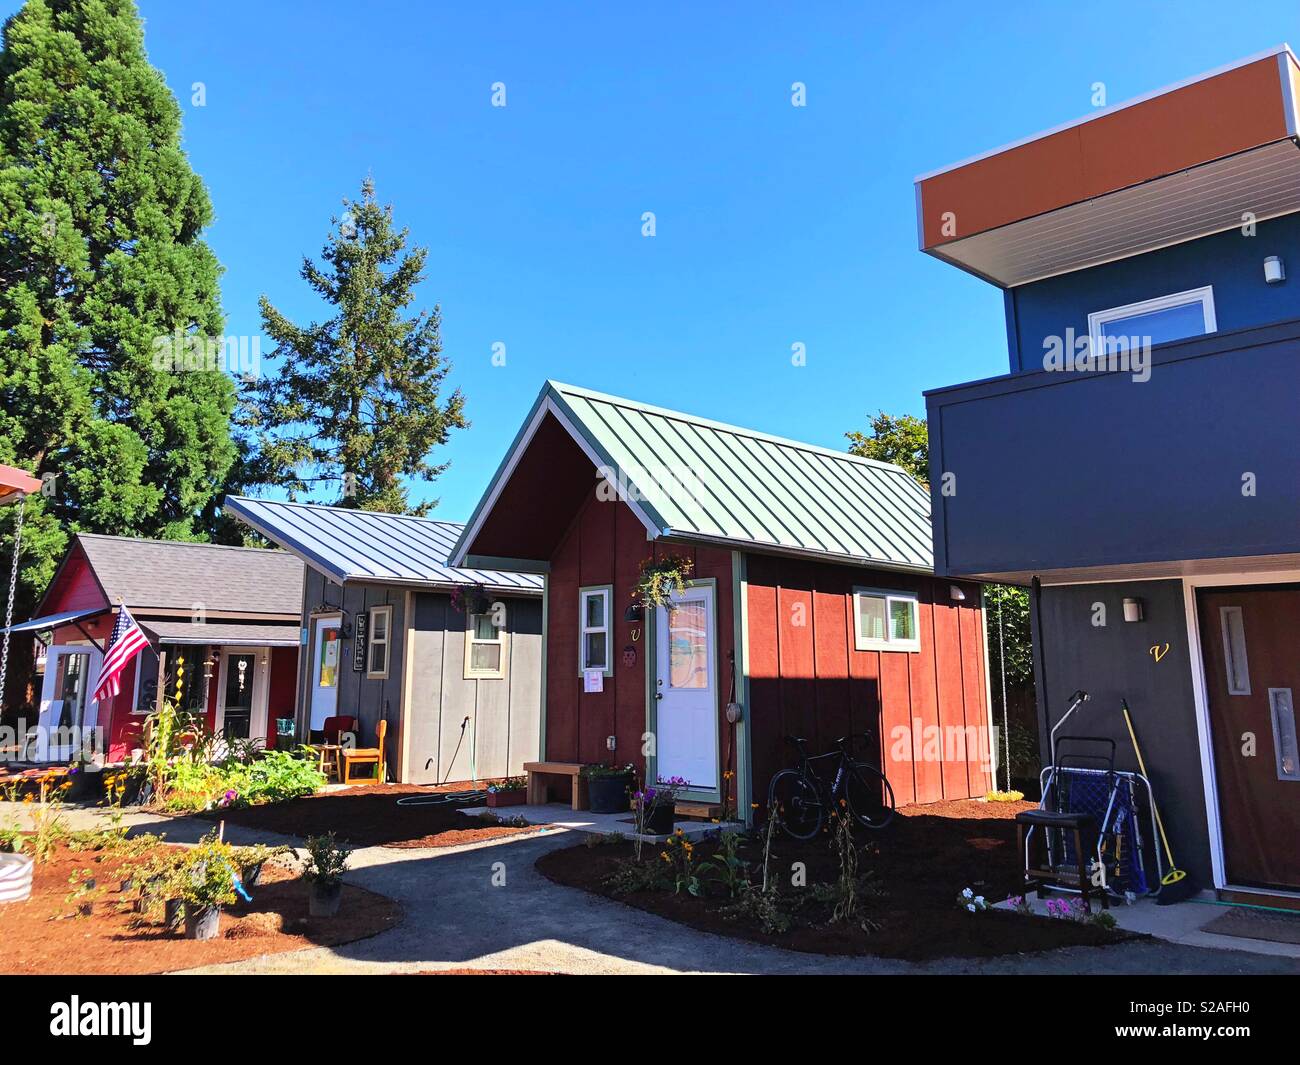 Emerald village tiny house community in Eugene, Oregon, USA. Stock Photo